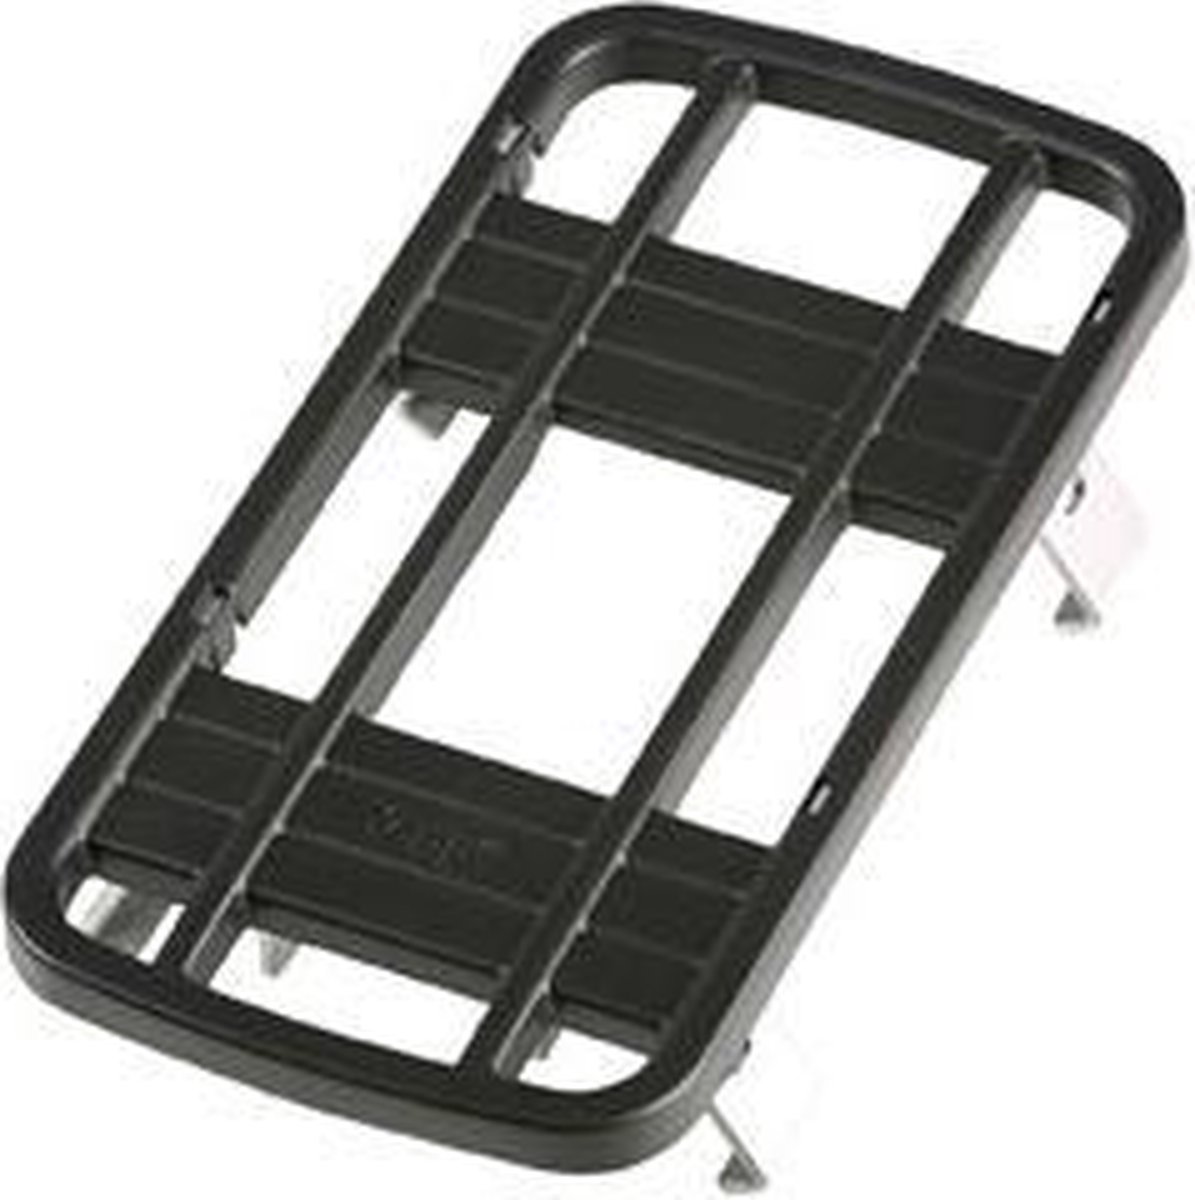 bol.com | Yepp Easyfit - (Electrische)Fiets bagagedrager Adapter - Zwart